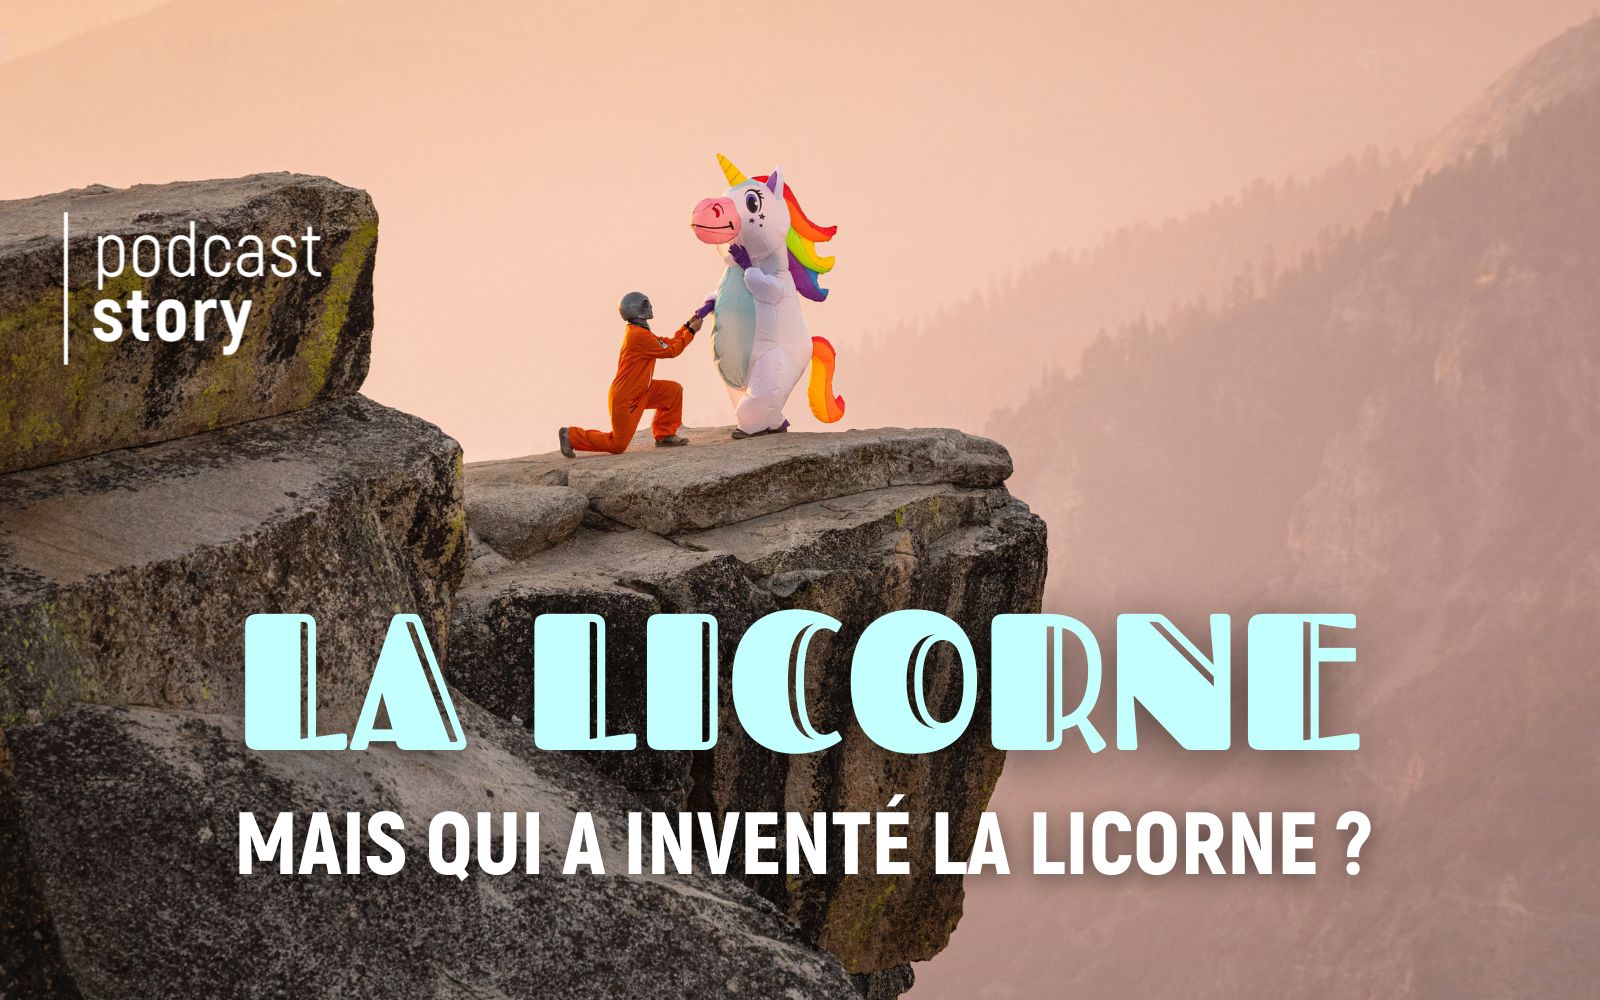 La Licorne : MAIS QUI A INVENTÉ LA LICORNE ?